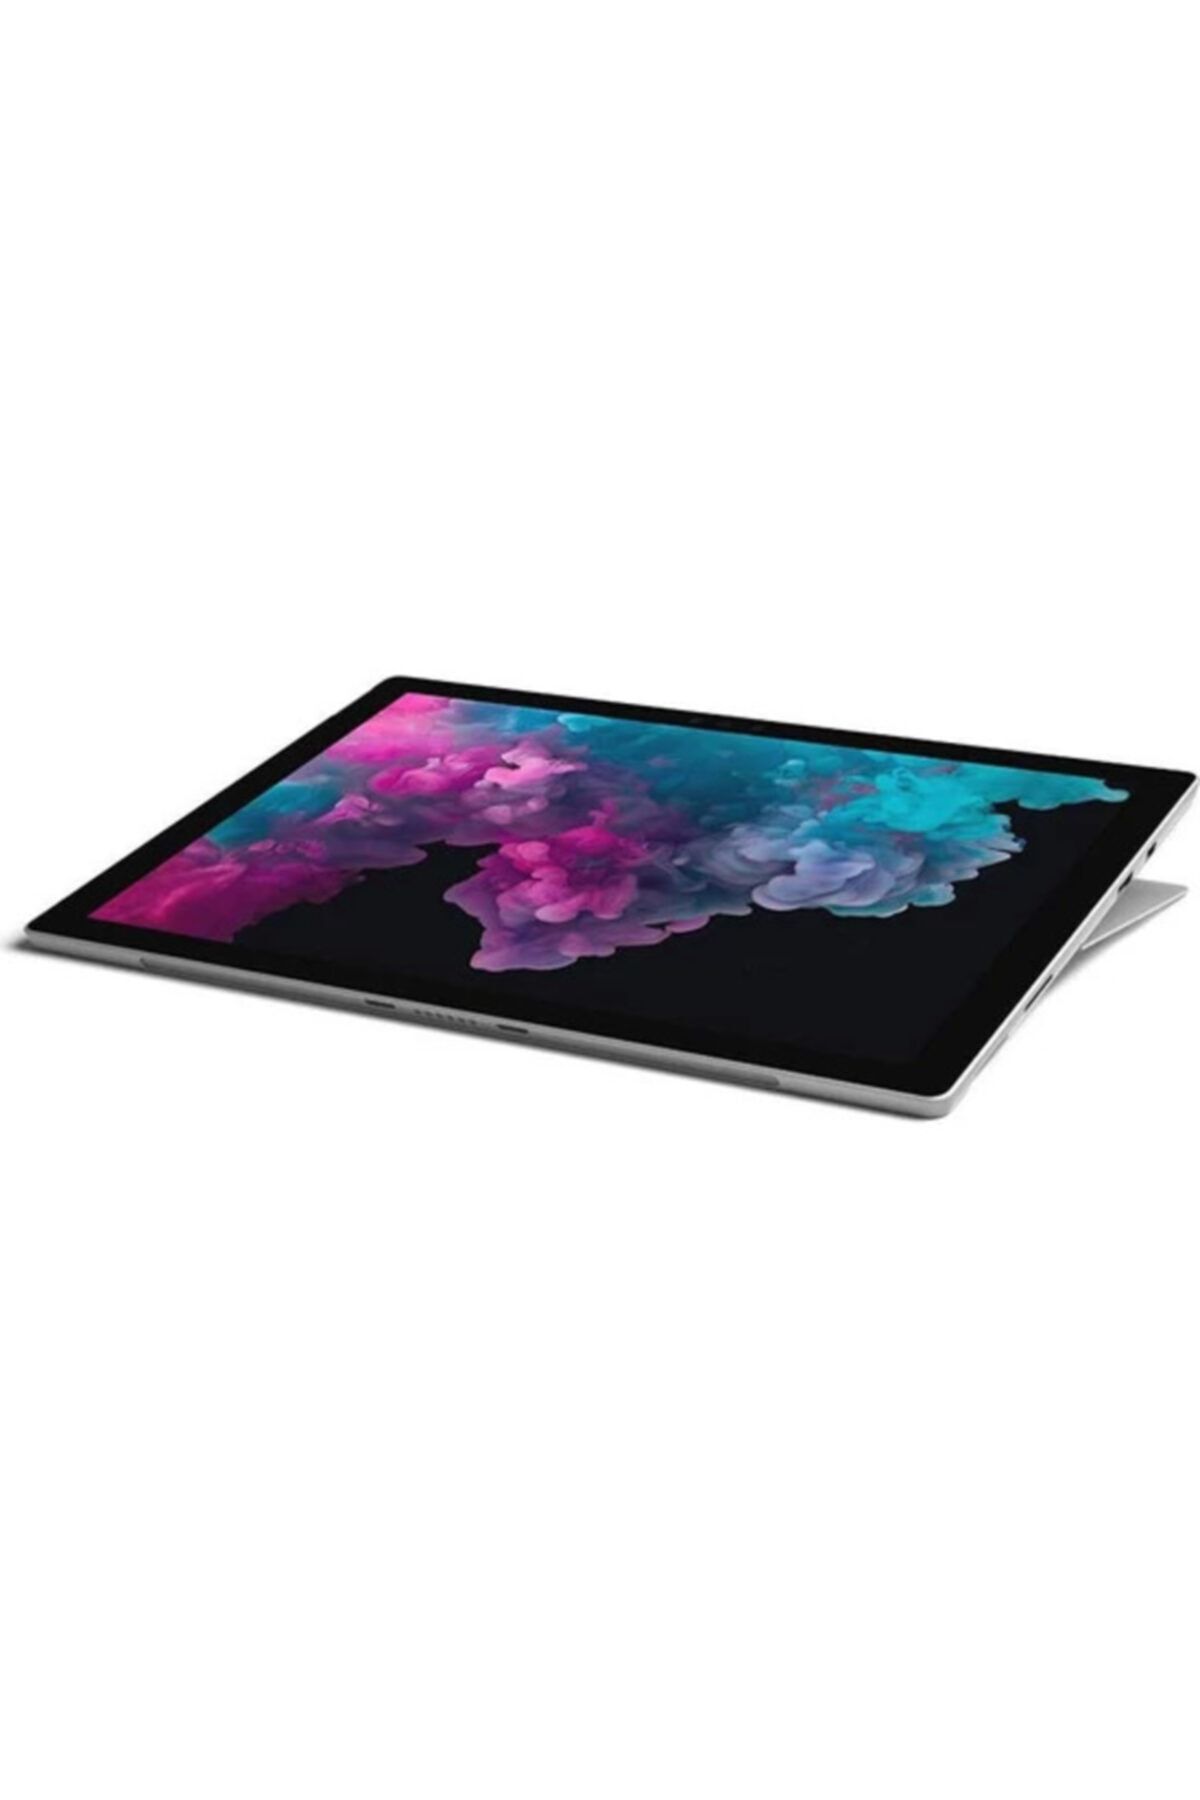 Microsoft Surface Pro 6 Intel Core I5 8250u 8gb 256gb Ssd Windows 10 Home 12.3" Fhd Kjt-00006